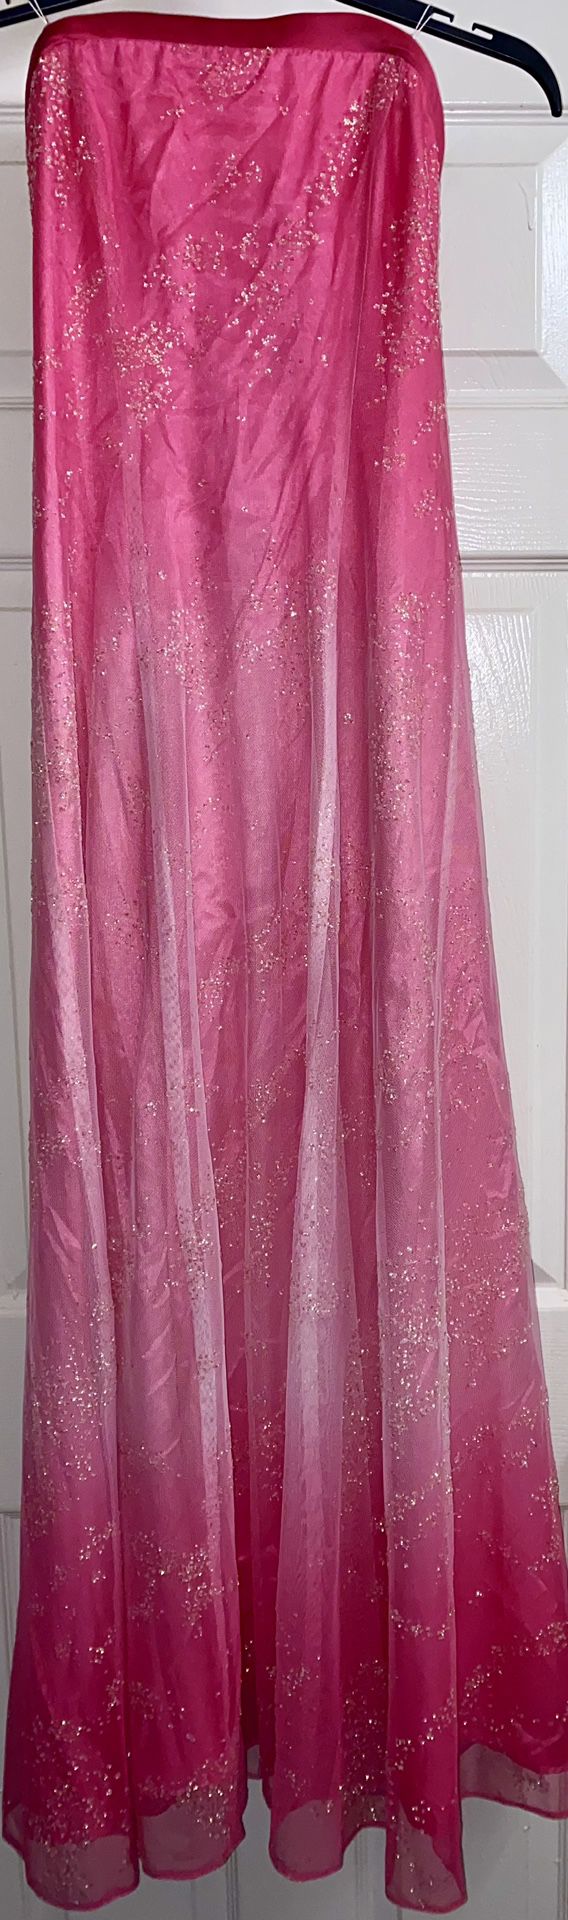 Zum Zum By Niki Livas Pink Ombré Strapless Glitter Formal Gown